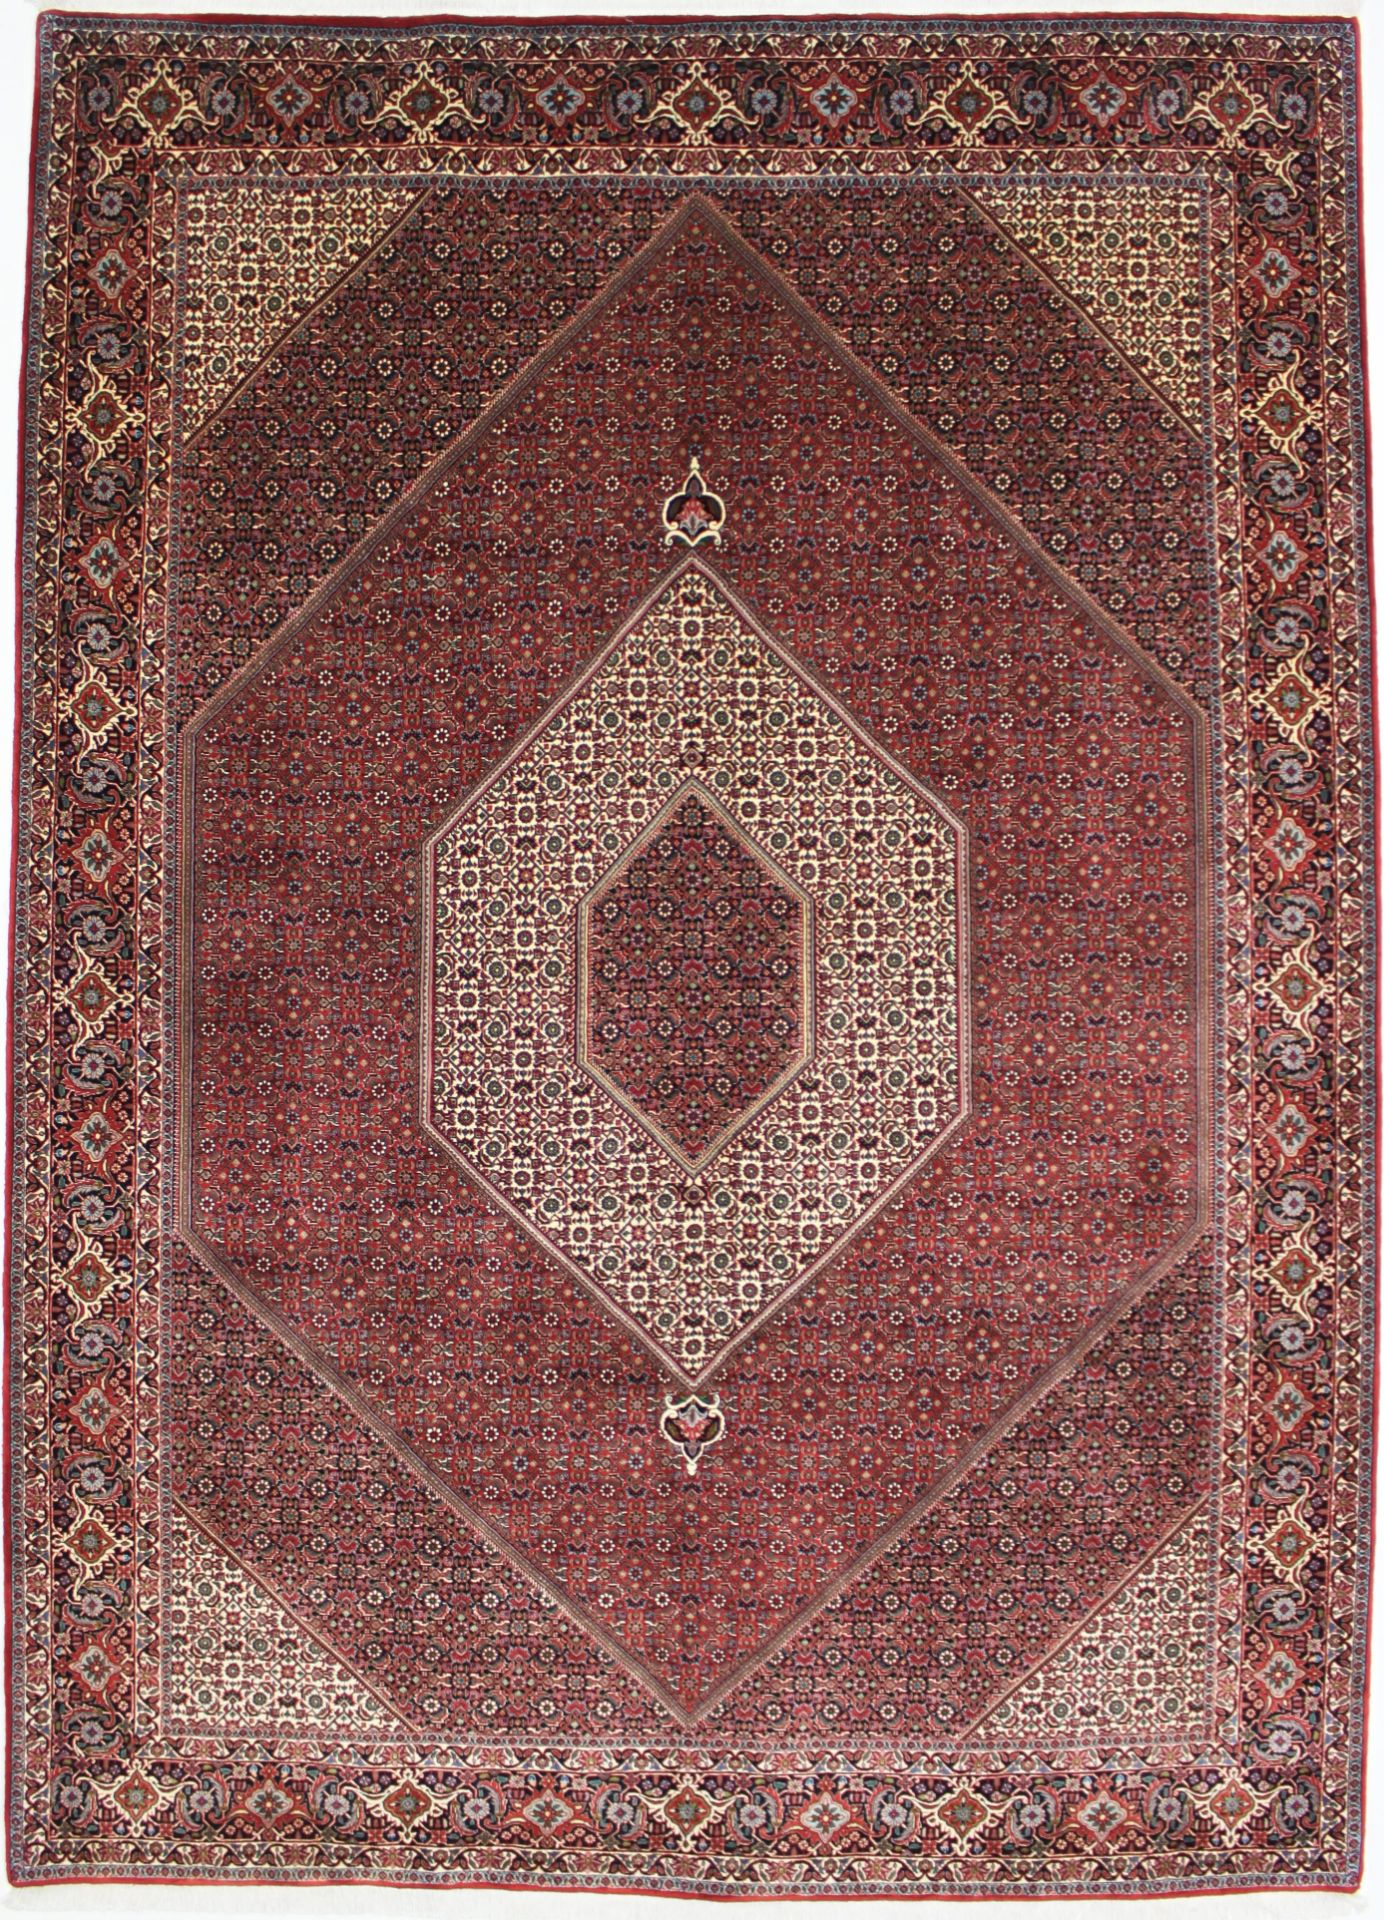 BIDJAR Iran - 351 x 253 cm - Image 2 of 6